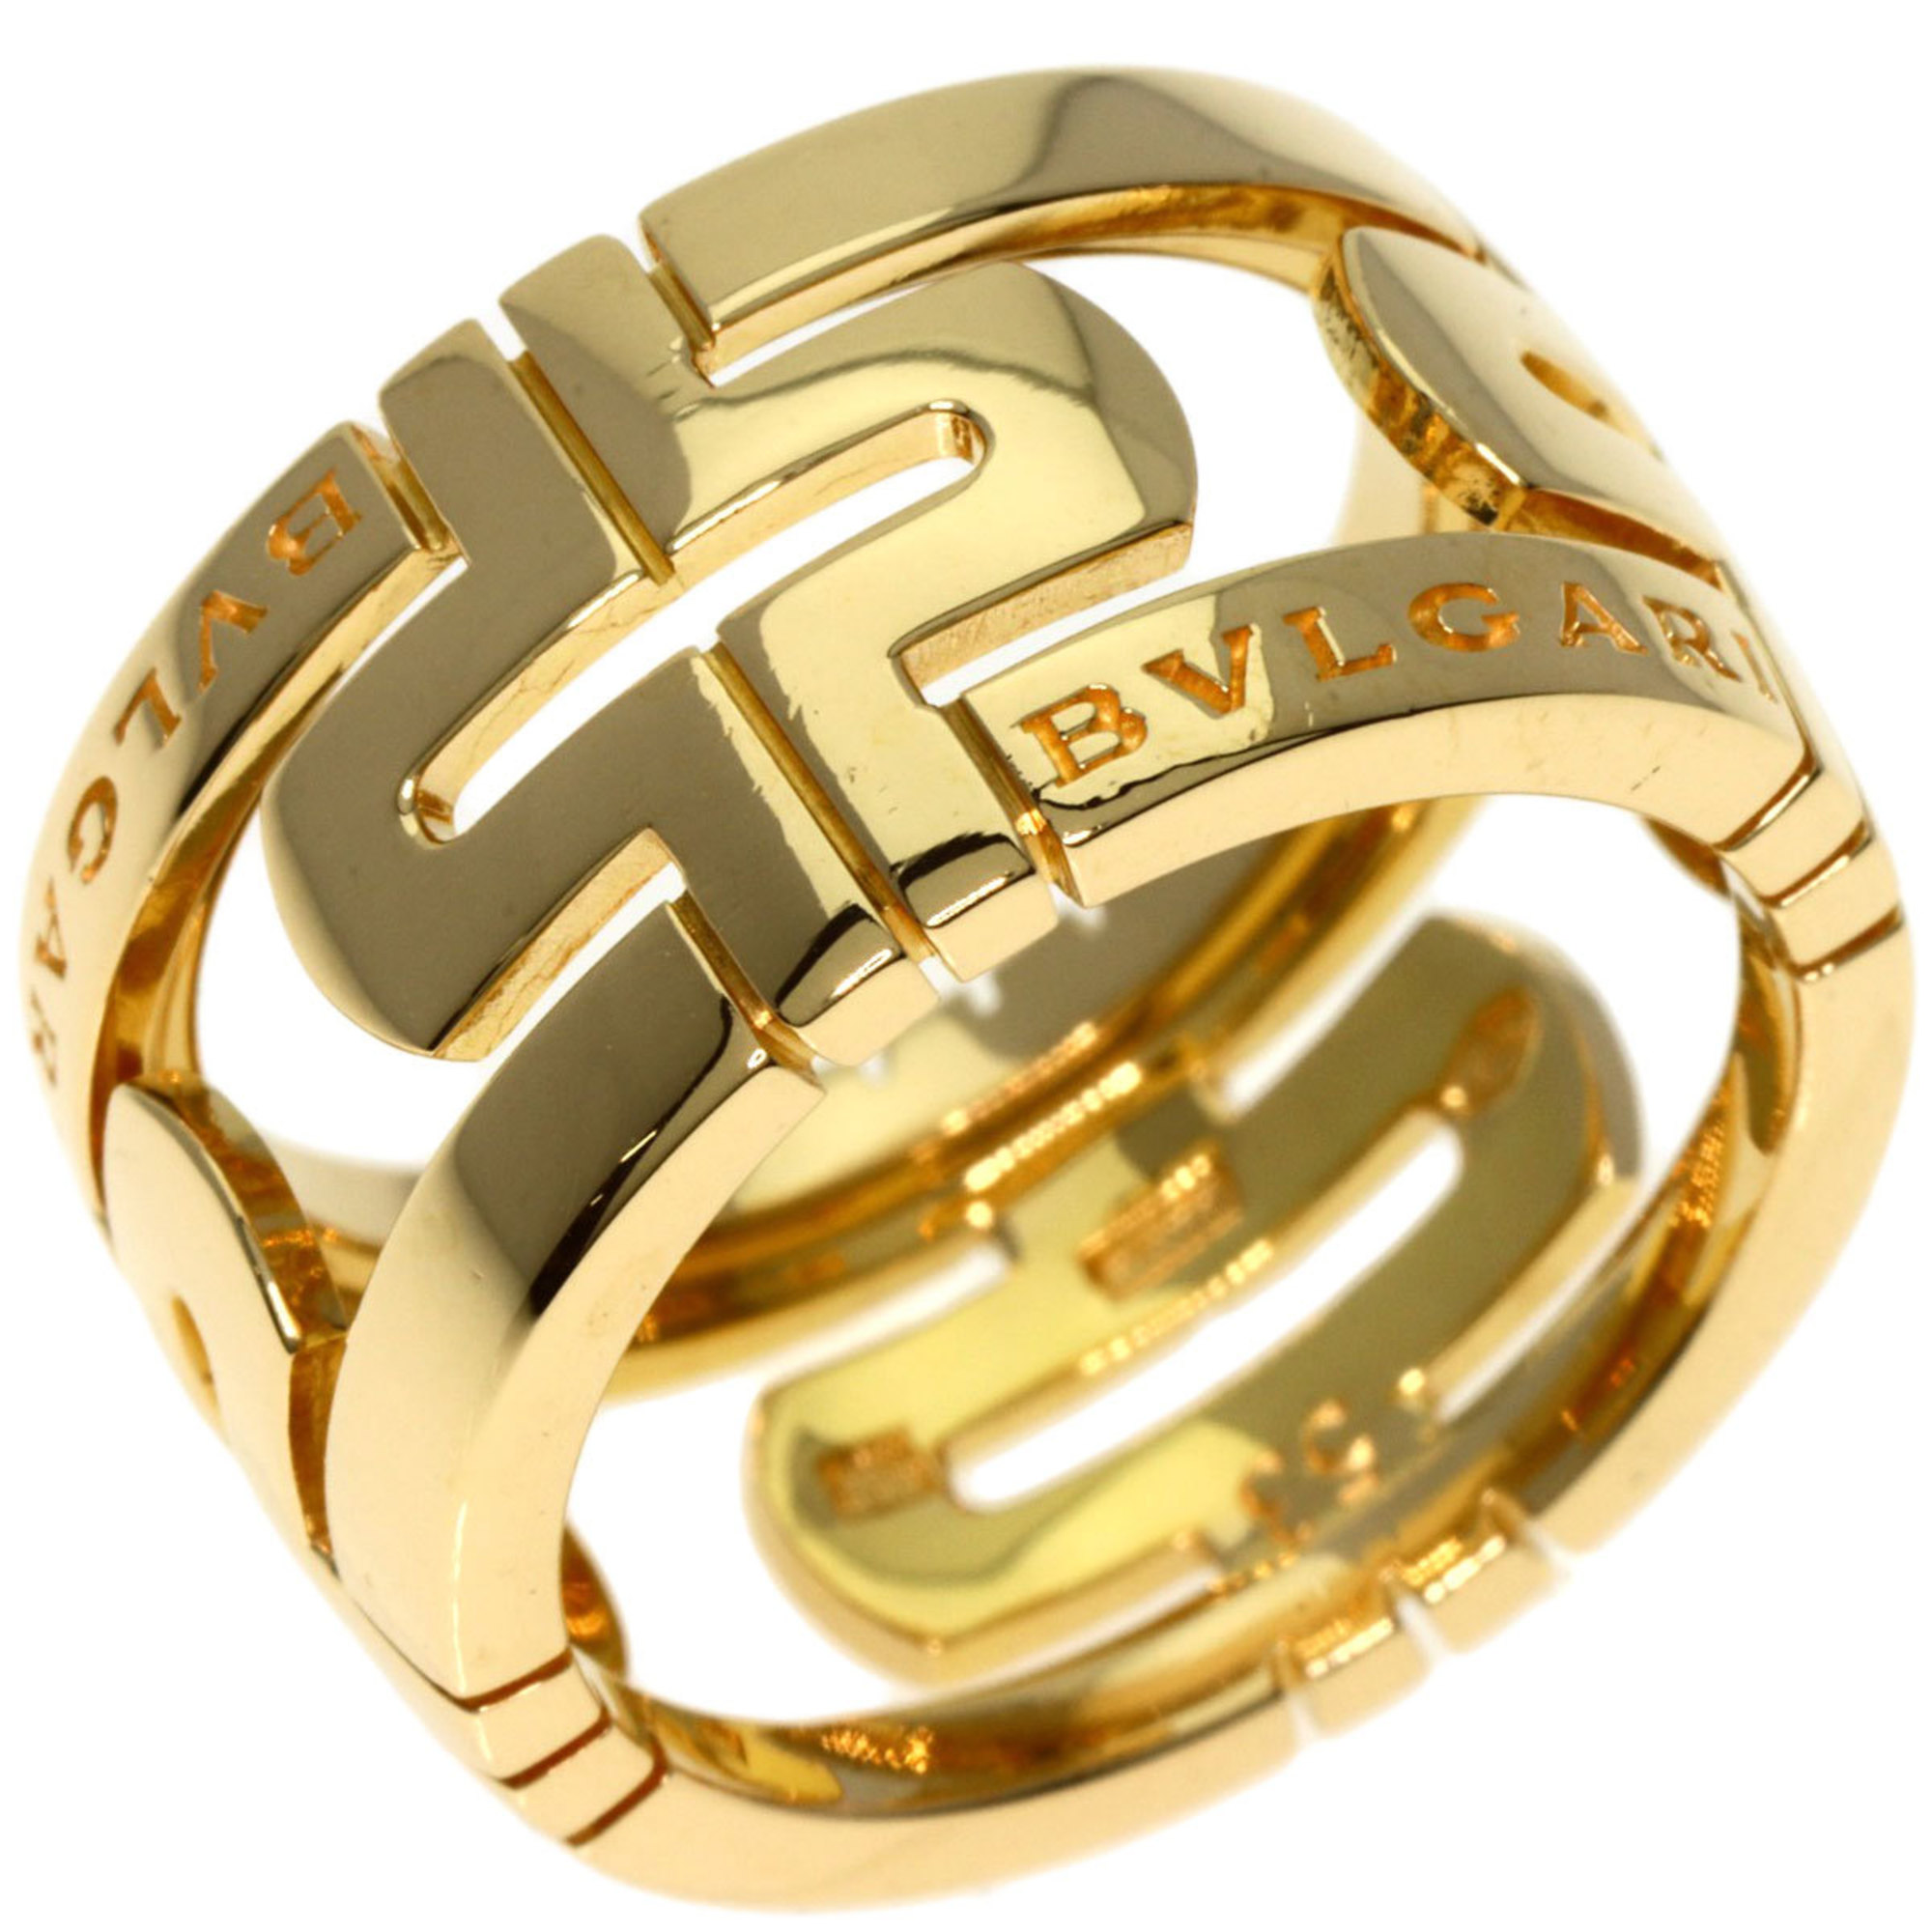 BVLGARI Parentesi Openwork Large Ring #53 K18 Yellow Gold Women's